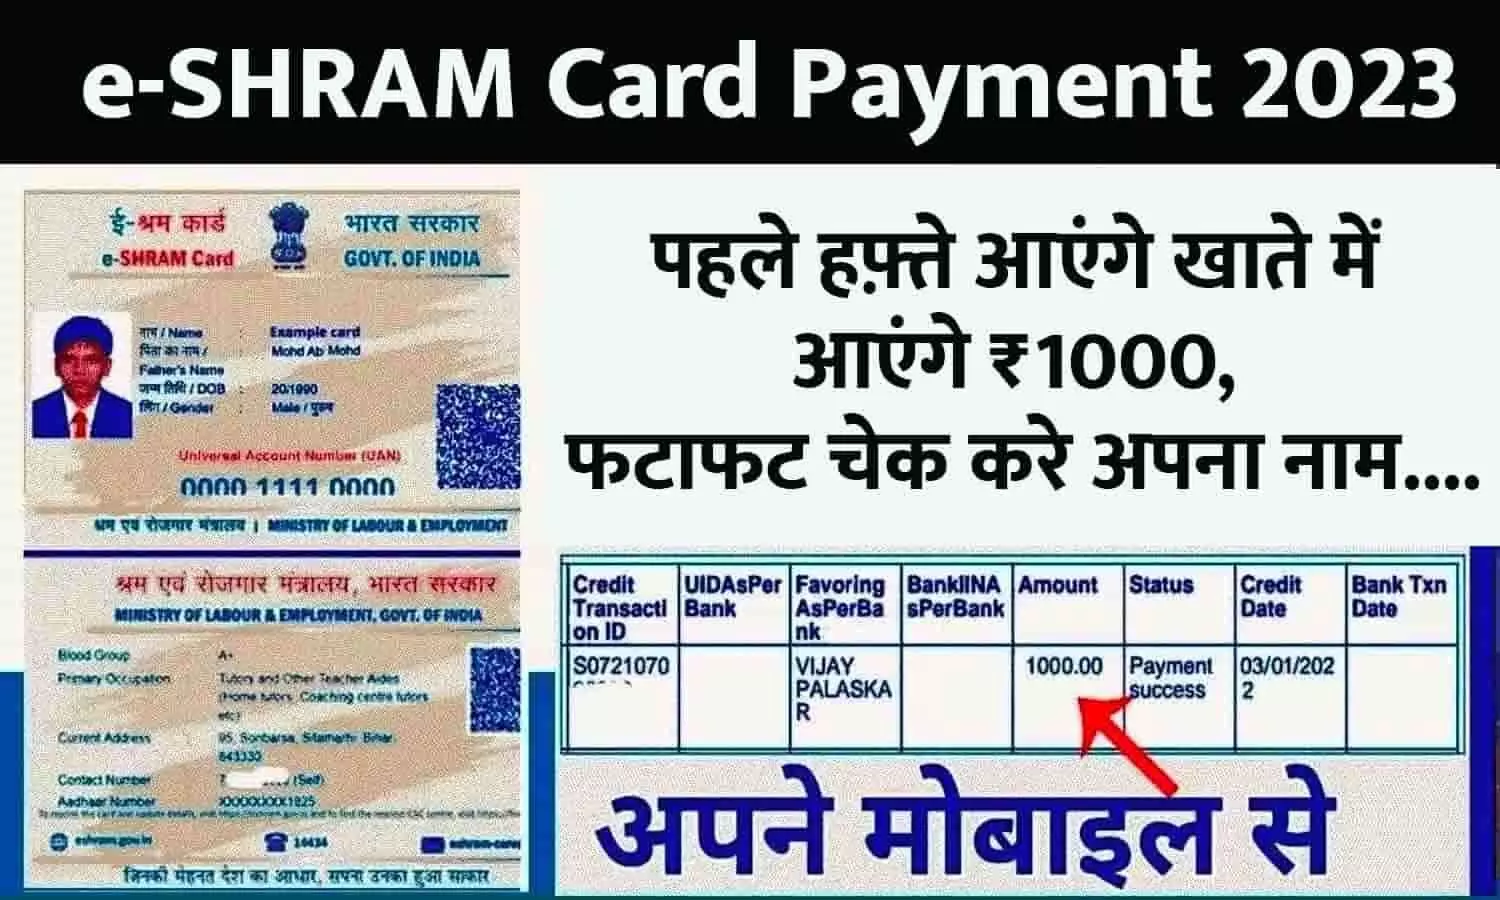 e-SHRAM Card Payment 2023